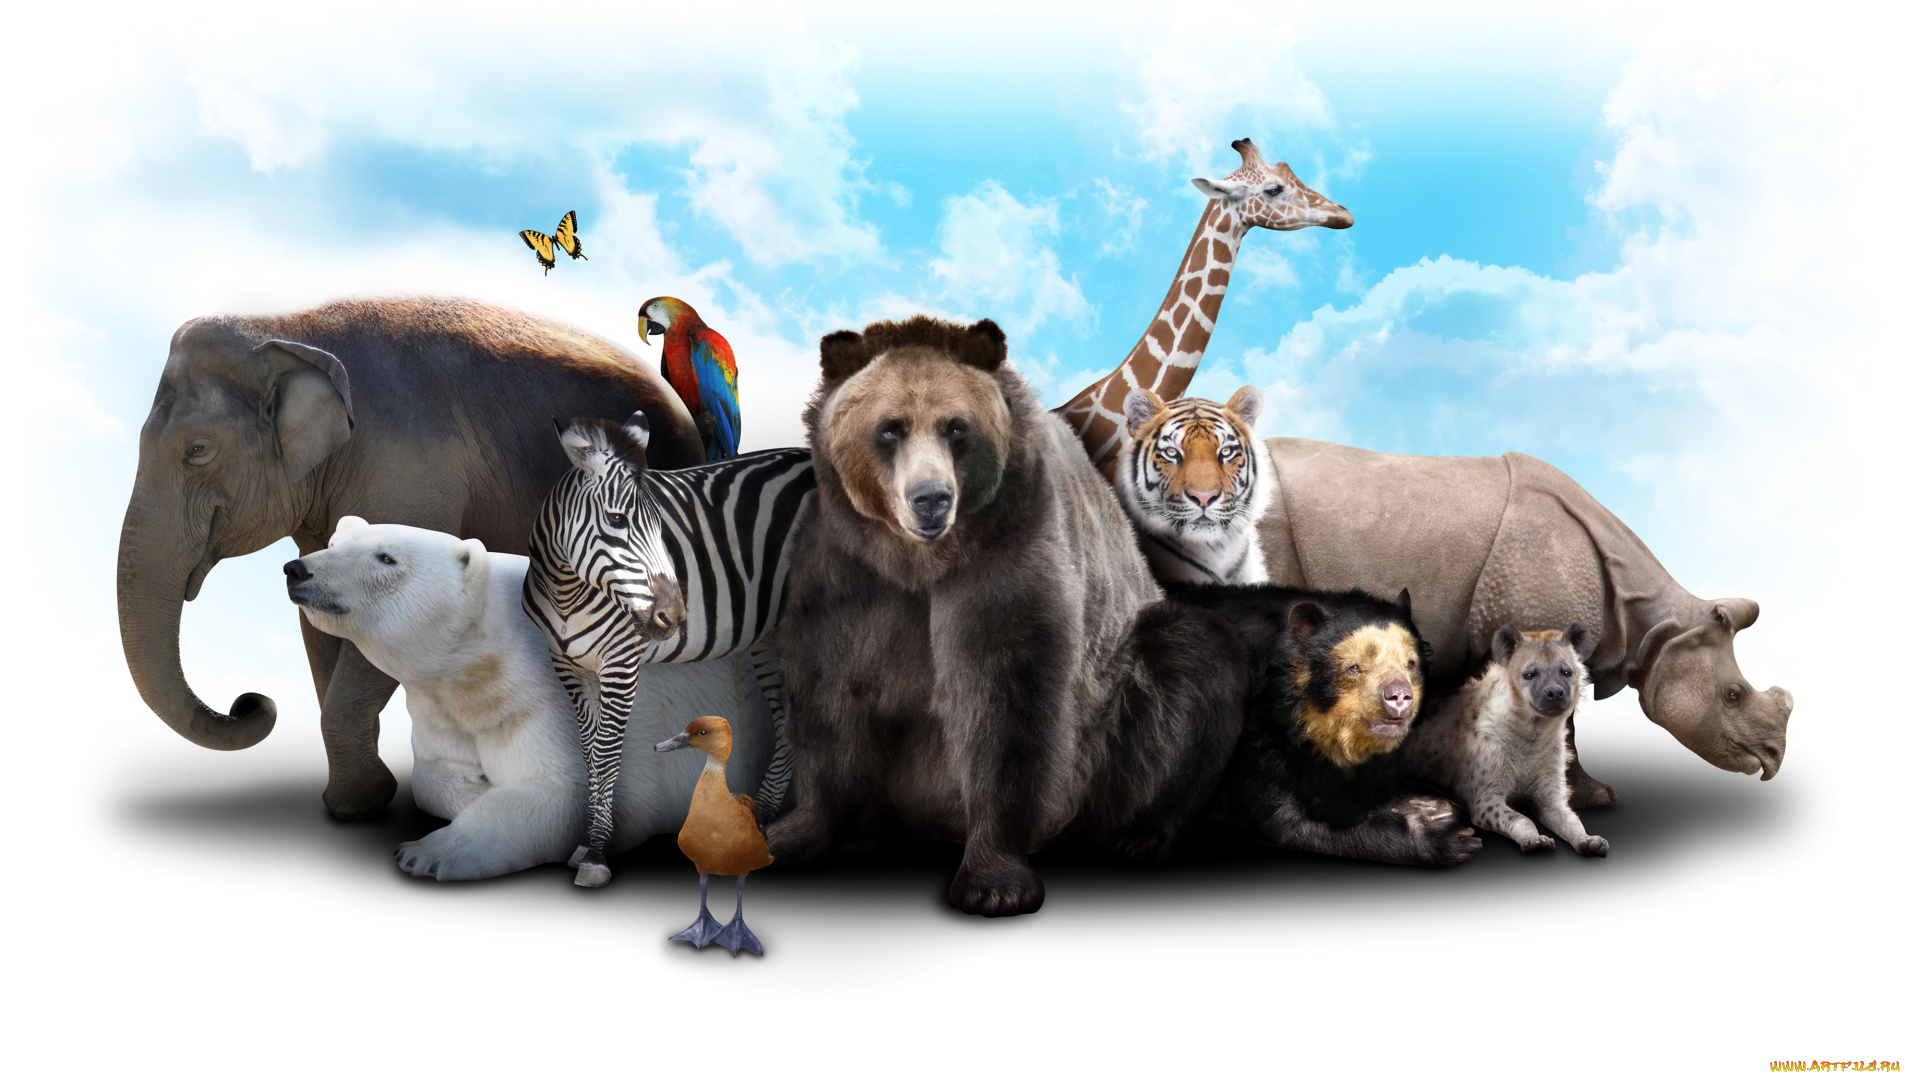 разное, компьютерный, дизайн, коала, медведь, зебра, жираф, слон, звери, белый, утка, носорог, гиена, тигр, облака, небо, бабочка, попугай